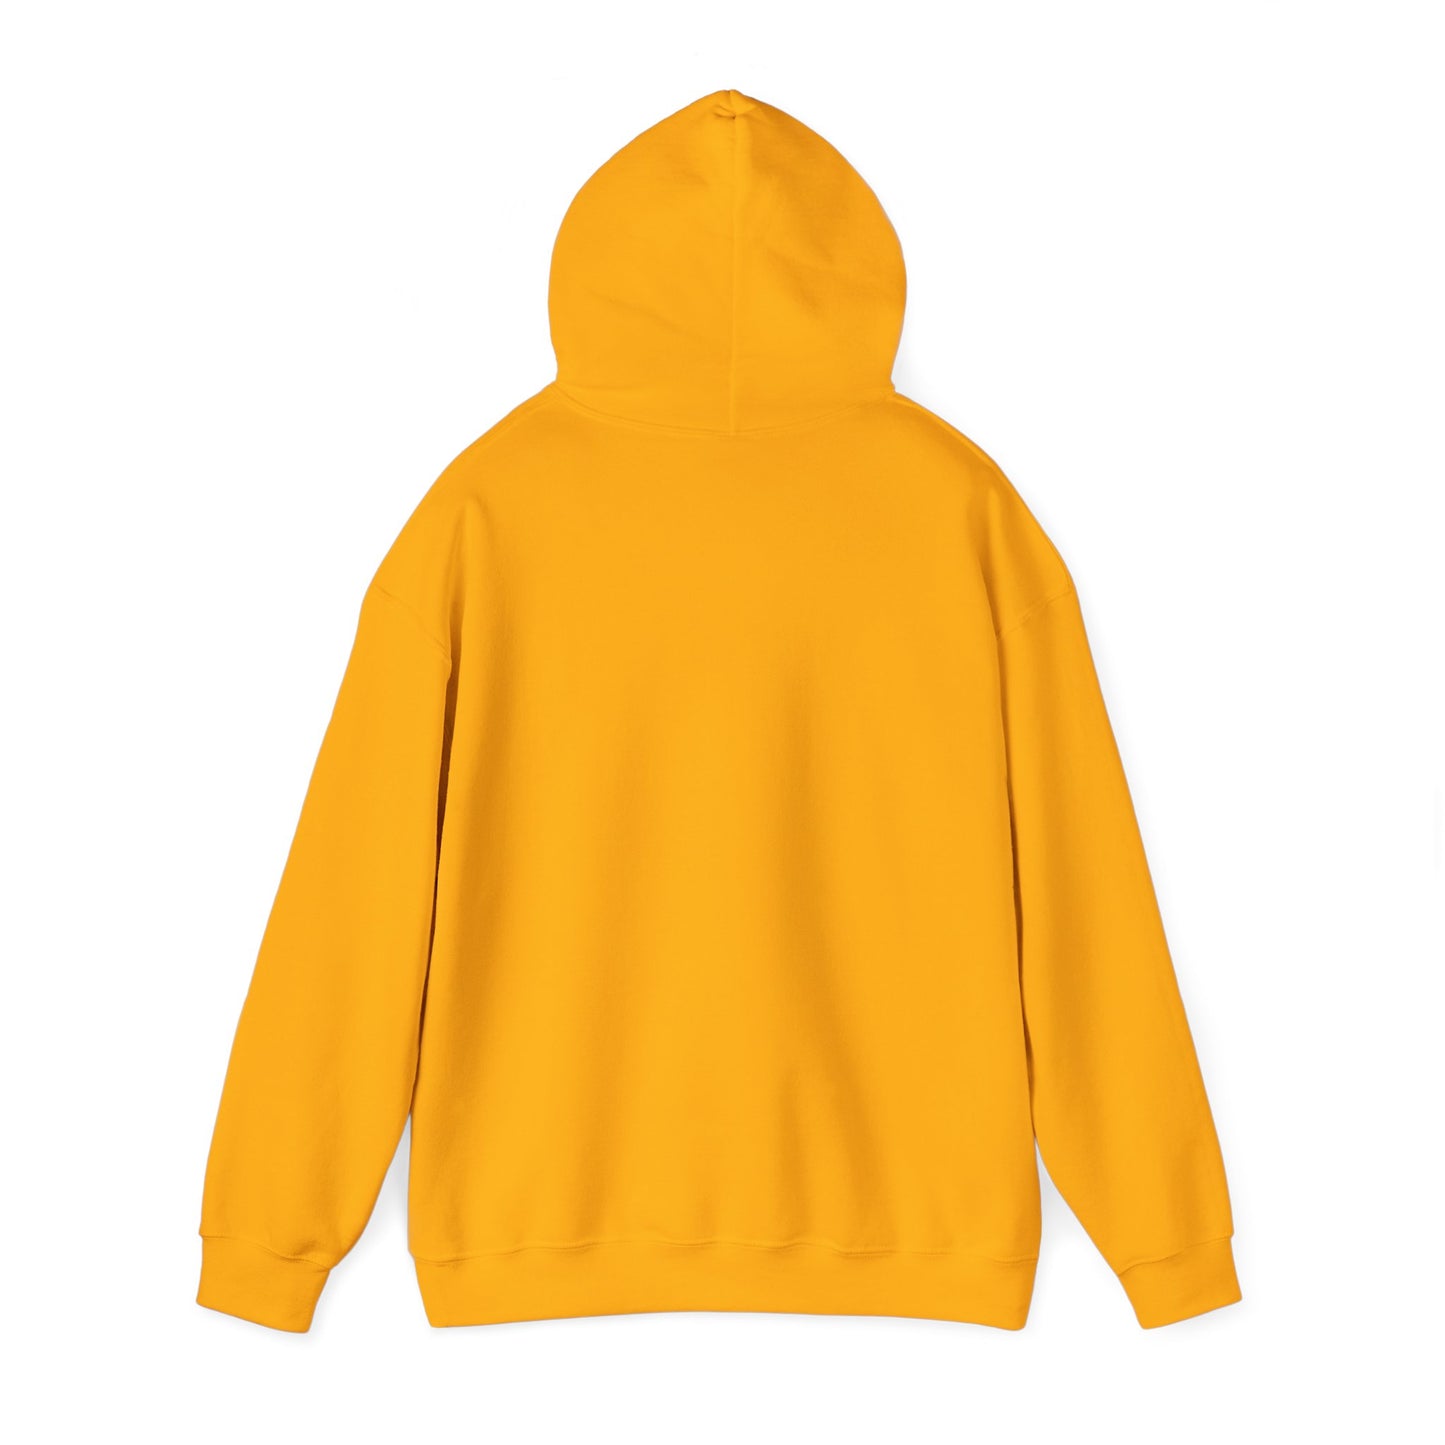 "In God we trust" Single Print Unisex Heavy Blend™ Hooded Sweatshirt